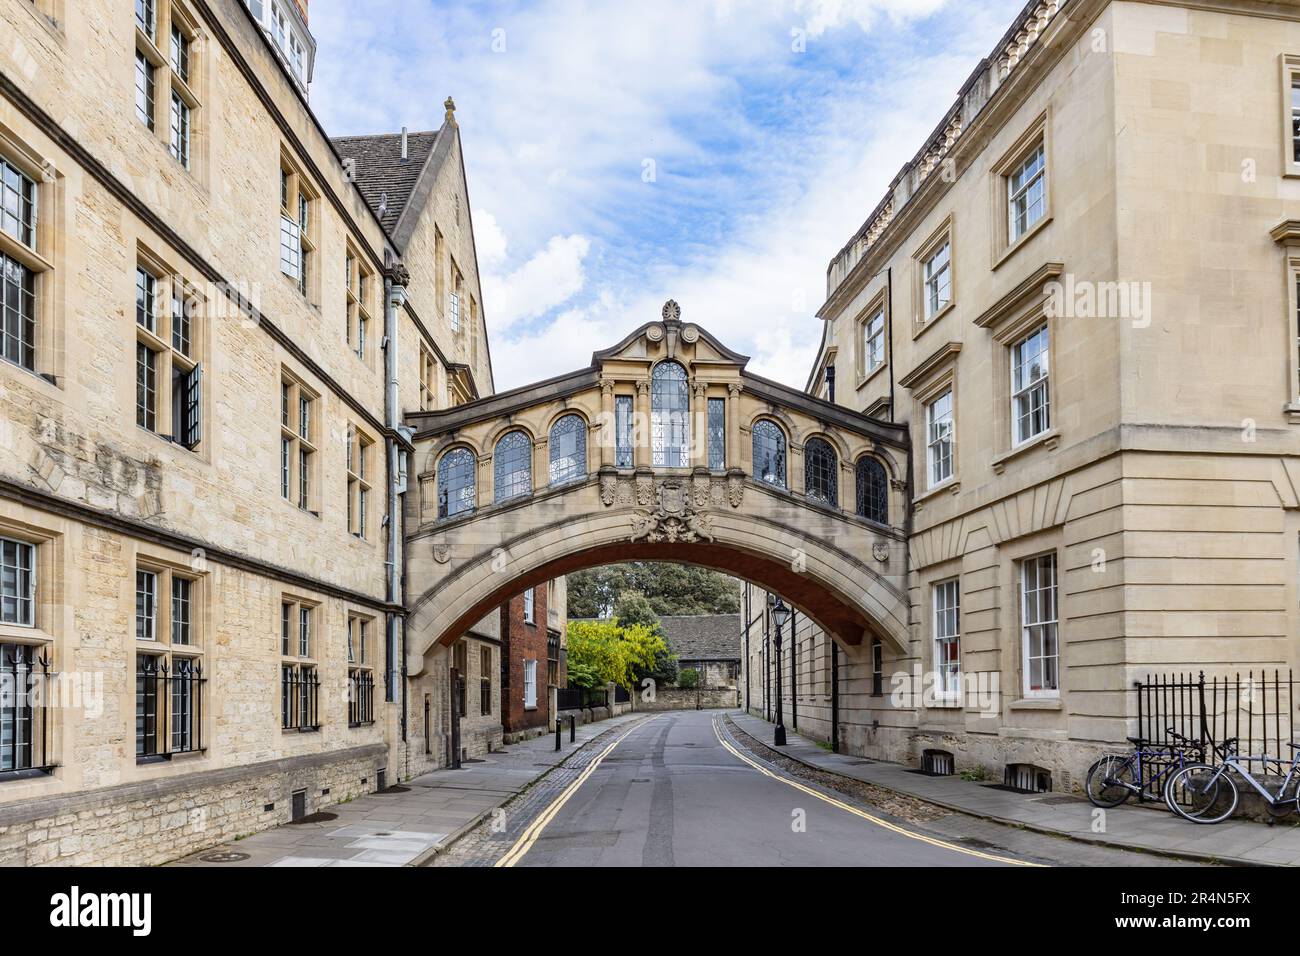 Il Ponte dei Sospiri o Hertford Bridge si trova tra gli edifici universitari dell'Hertford College in New College Lane Street, a Oxford, Oxfordshire, Inghilterra Foto Stock